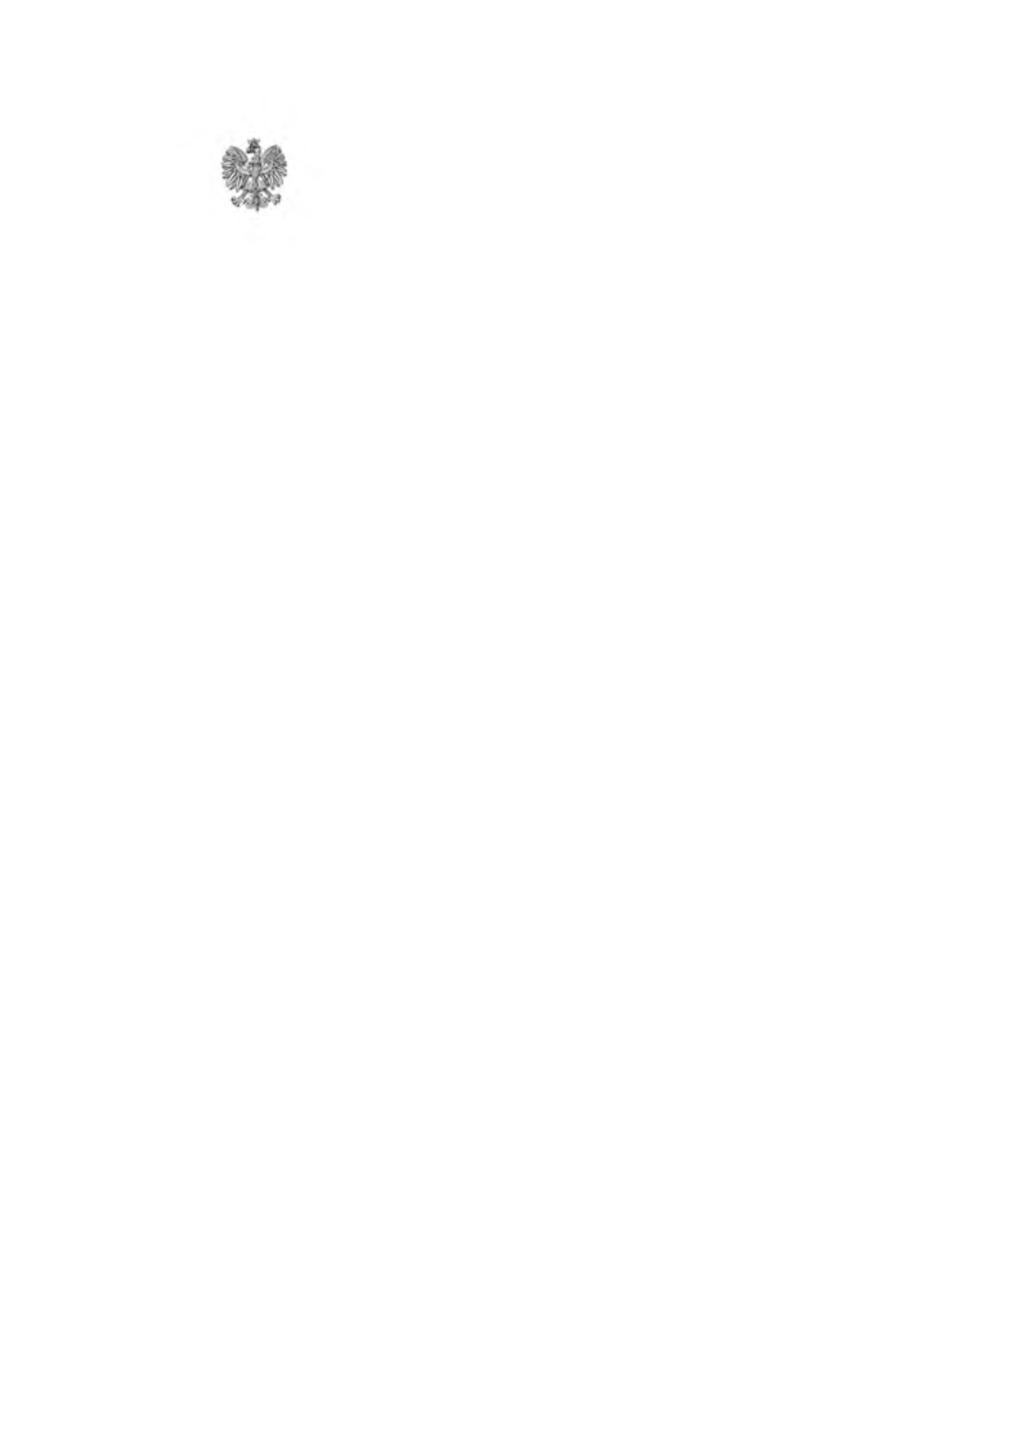 WOJEWODA DOLNOŚLĄSKI Wrocław, dnia 16 sierpnia 2017 r. NK-KS.431.1.7.2017.MK Pan Dariusz Klonowski Przewodniczący Rady Powiatu Kłodzkiego Wystąpienie pokontrolne Na podstawie art.